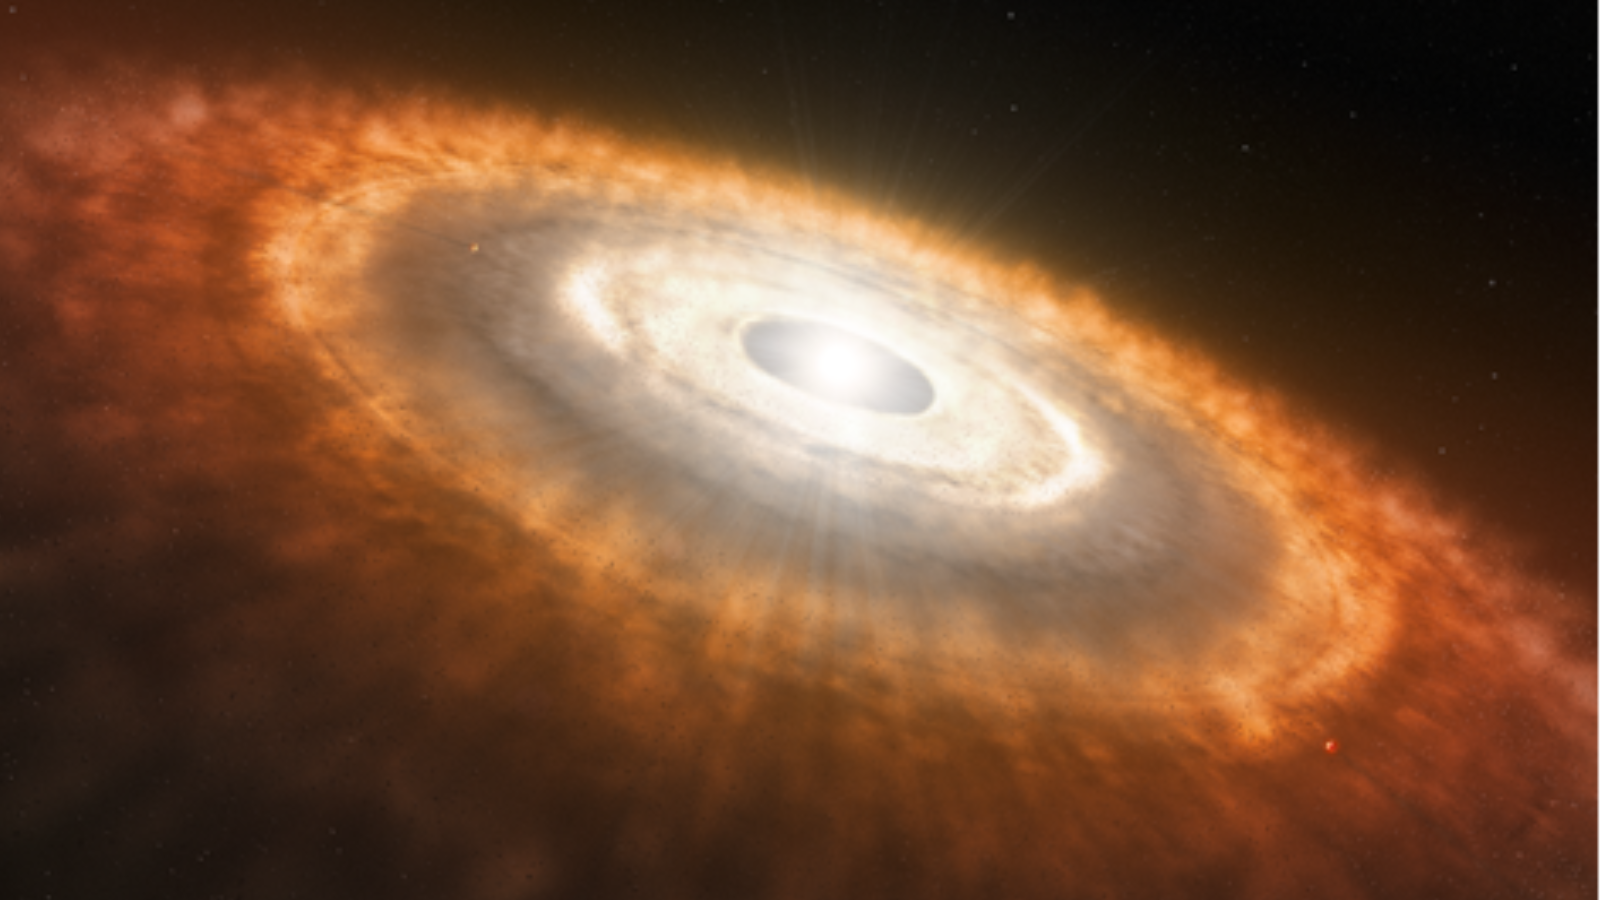 Illustrazione di una stella bianca brillante circondata da un enorme alone di gas rossastro, polvere e altri oggetti.